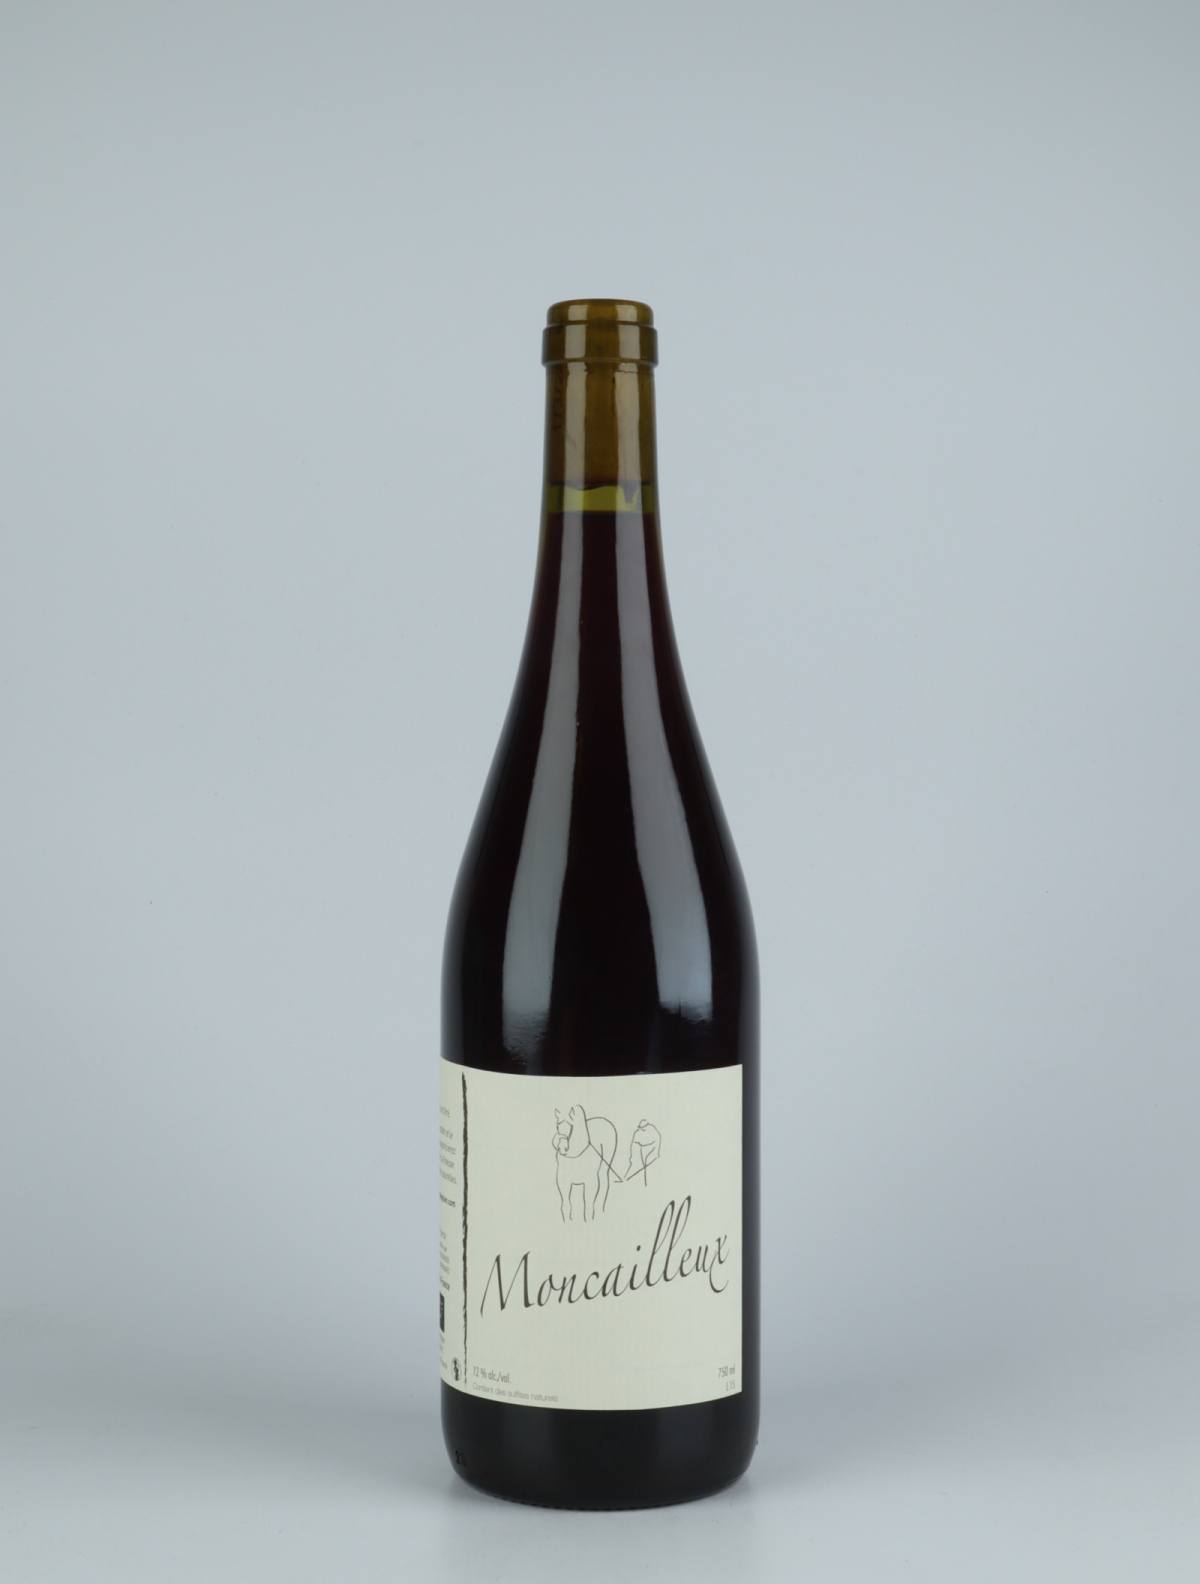 En flaske 2015 Moncailleux Rødvin fra Michel Guignier, Beaujolais i Frankrig